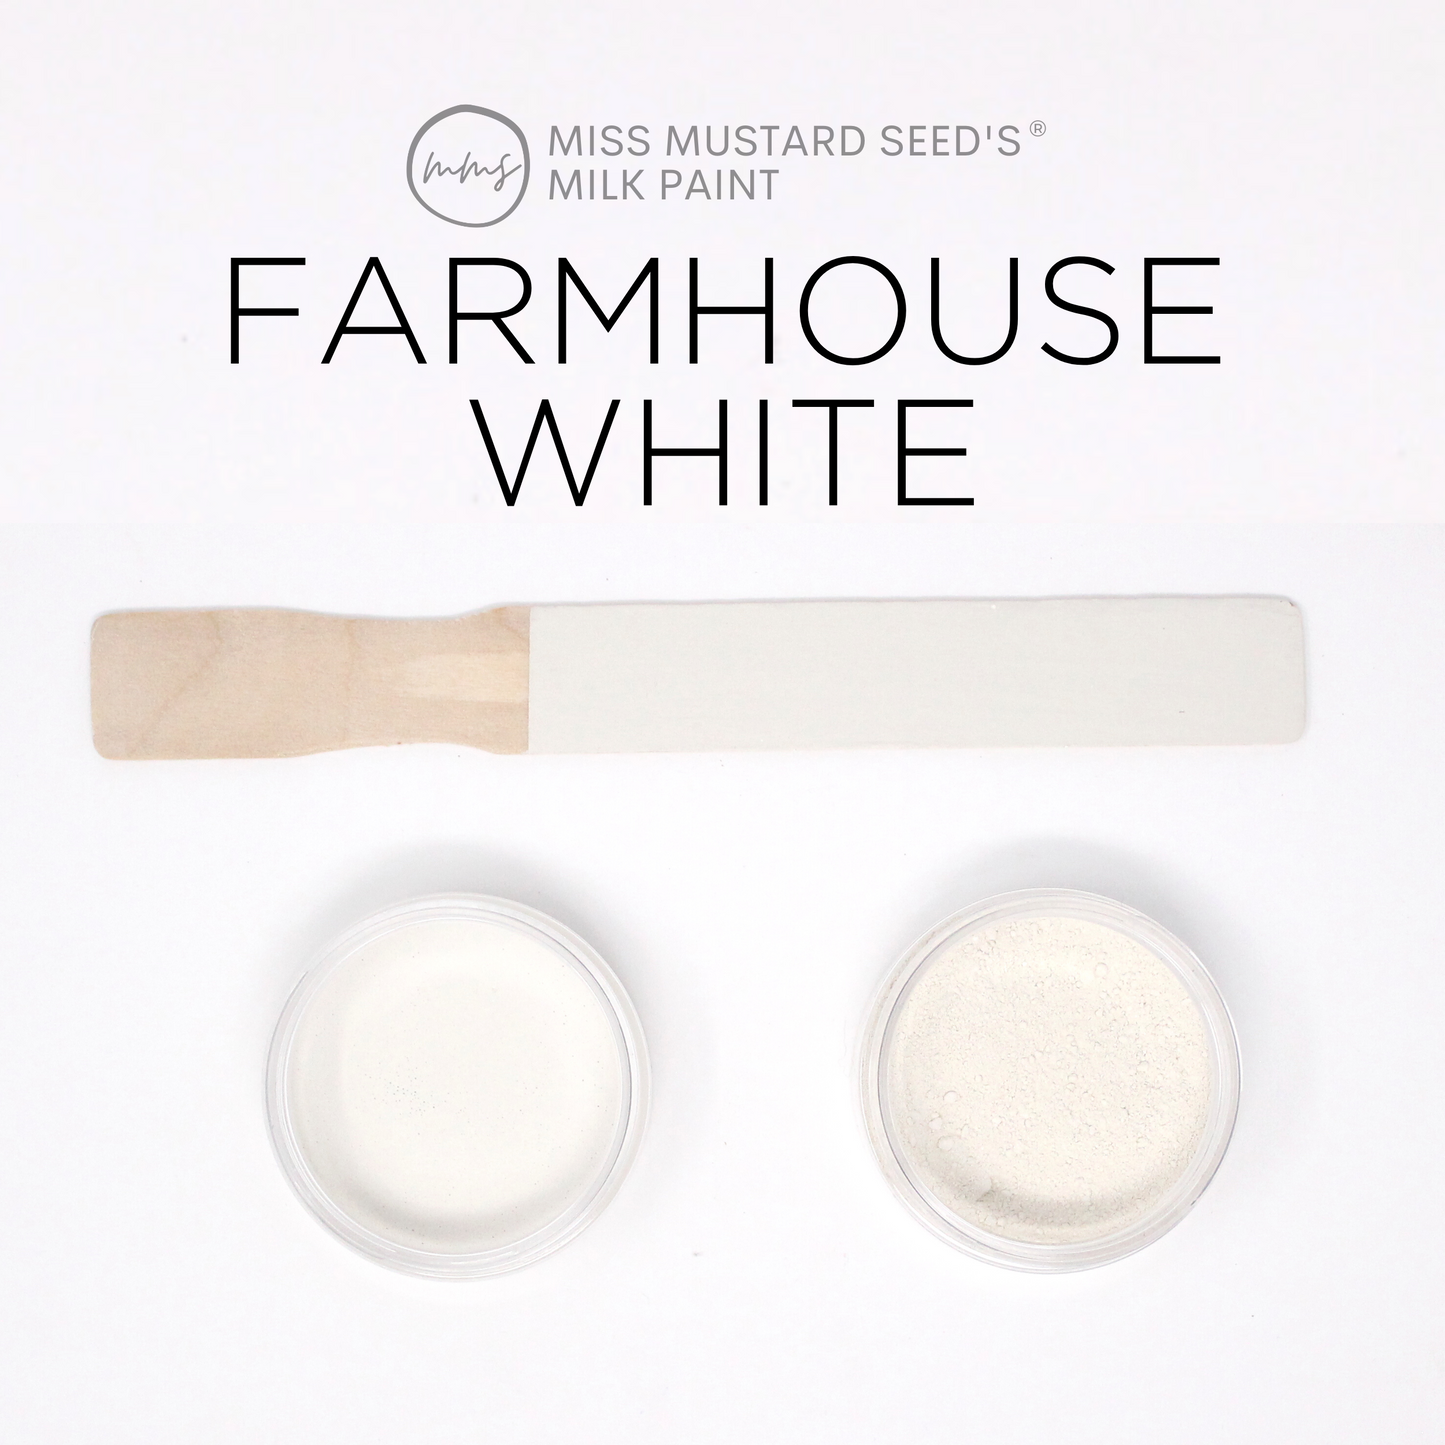 MilkPaint™ - Farmhouse White